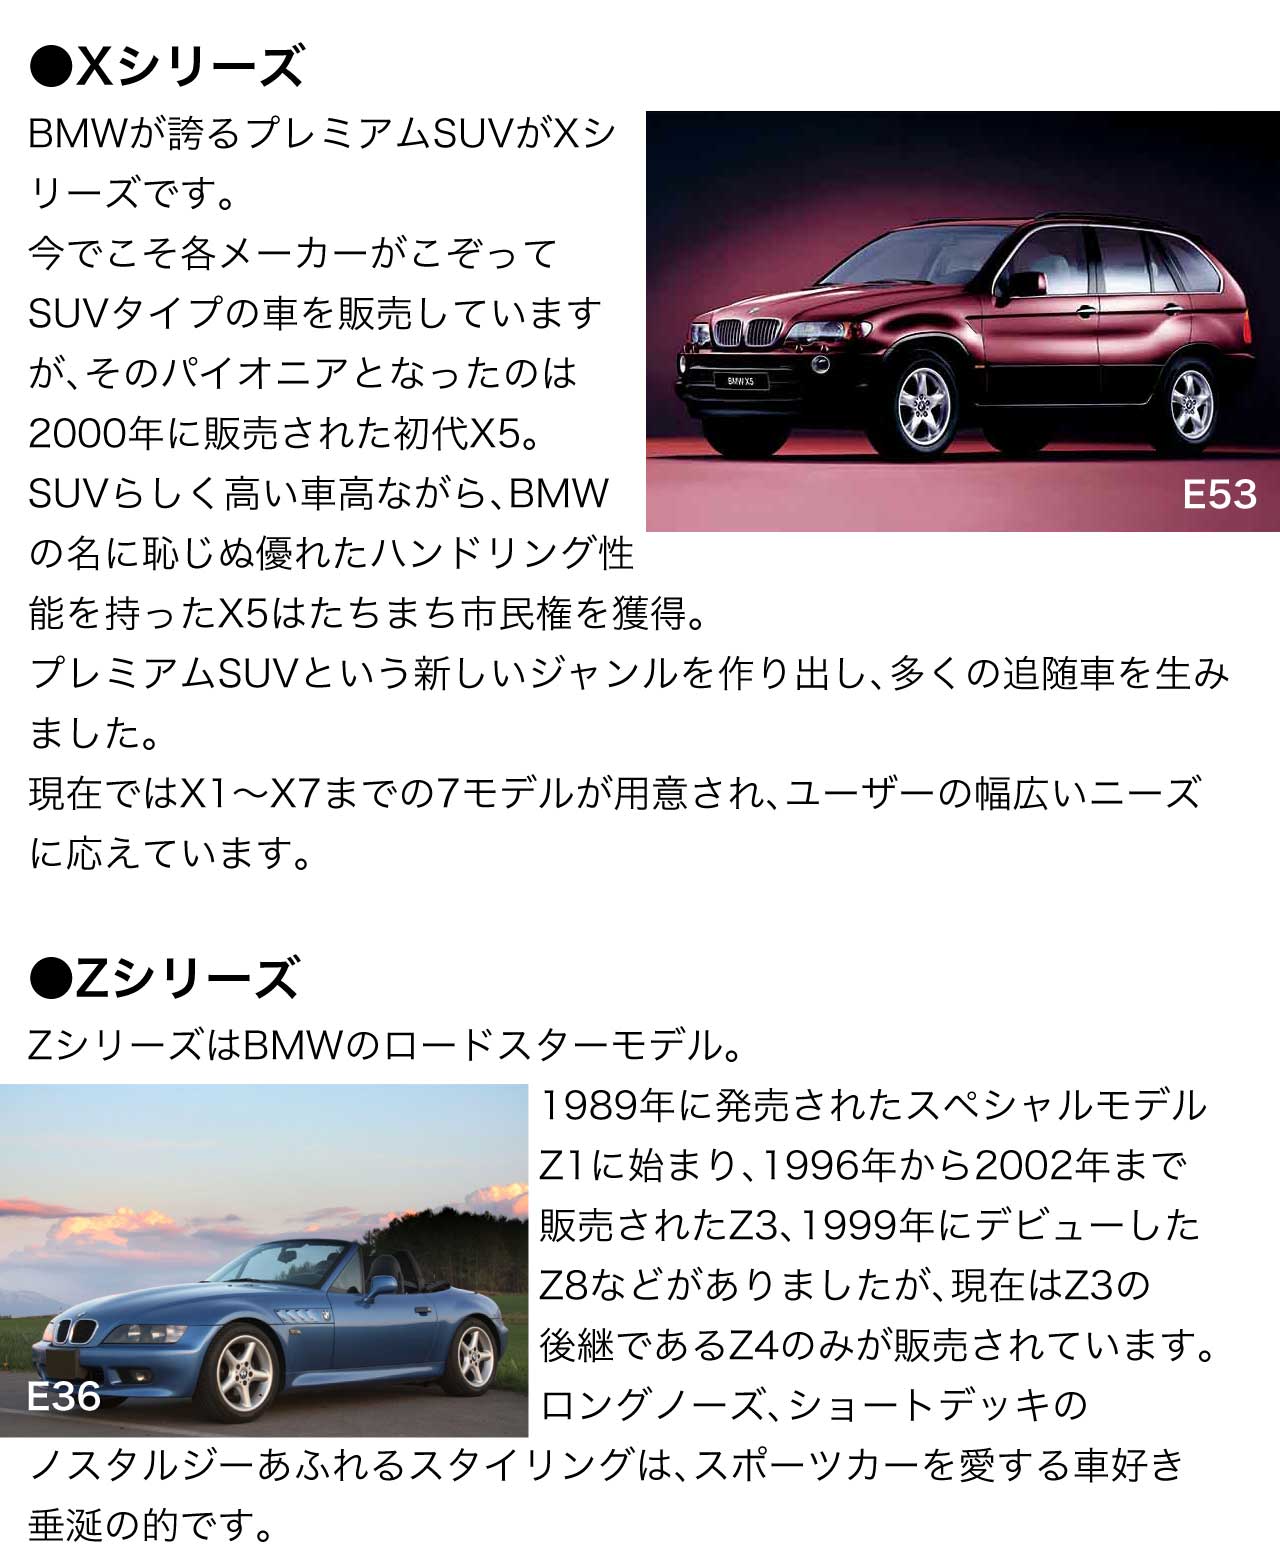 Xシリーズ BMWが誇るプレミアムSUVがXシリーズです。今でこそ各メーカーがこぞってSUVタイプの車を販売していますが、そのパイオニアとなったのは2000年に販売された初代X5。SUVらしく高い車高ながら、BMWの名に恥じぬ優れたハンドリング性能を持ったX5はたちまち市民権を獲得。プレミアムSUVという新しいジャンルを作り出し、多くの追随車を生みました。現在ではX1～X7までの7モデルが用意され、ユーザーの幅広いニーズに応えています。Zシリーズ ZシリーズはBMWのロードスターモデル。1989年に発売されたスペシャルモデルZ1に始まり、1996年から2002年まで販売されたZ3、1999年にデビューしたZ8などがありましたが、現在はZ3の後継であるZ4のみが販売されています。ロングノーズ、ショートデッキのノスタルジーあふれるスタイリングは、スポーツカーを愛する車好き垂涎の的です。